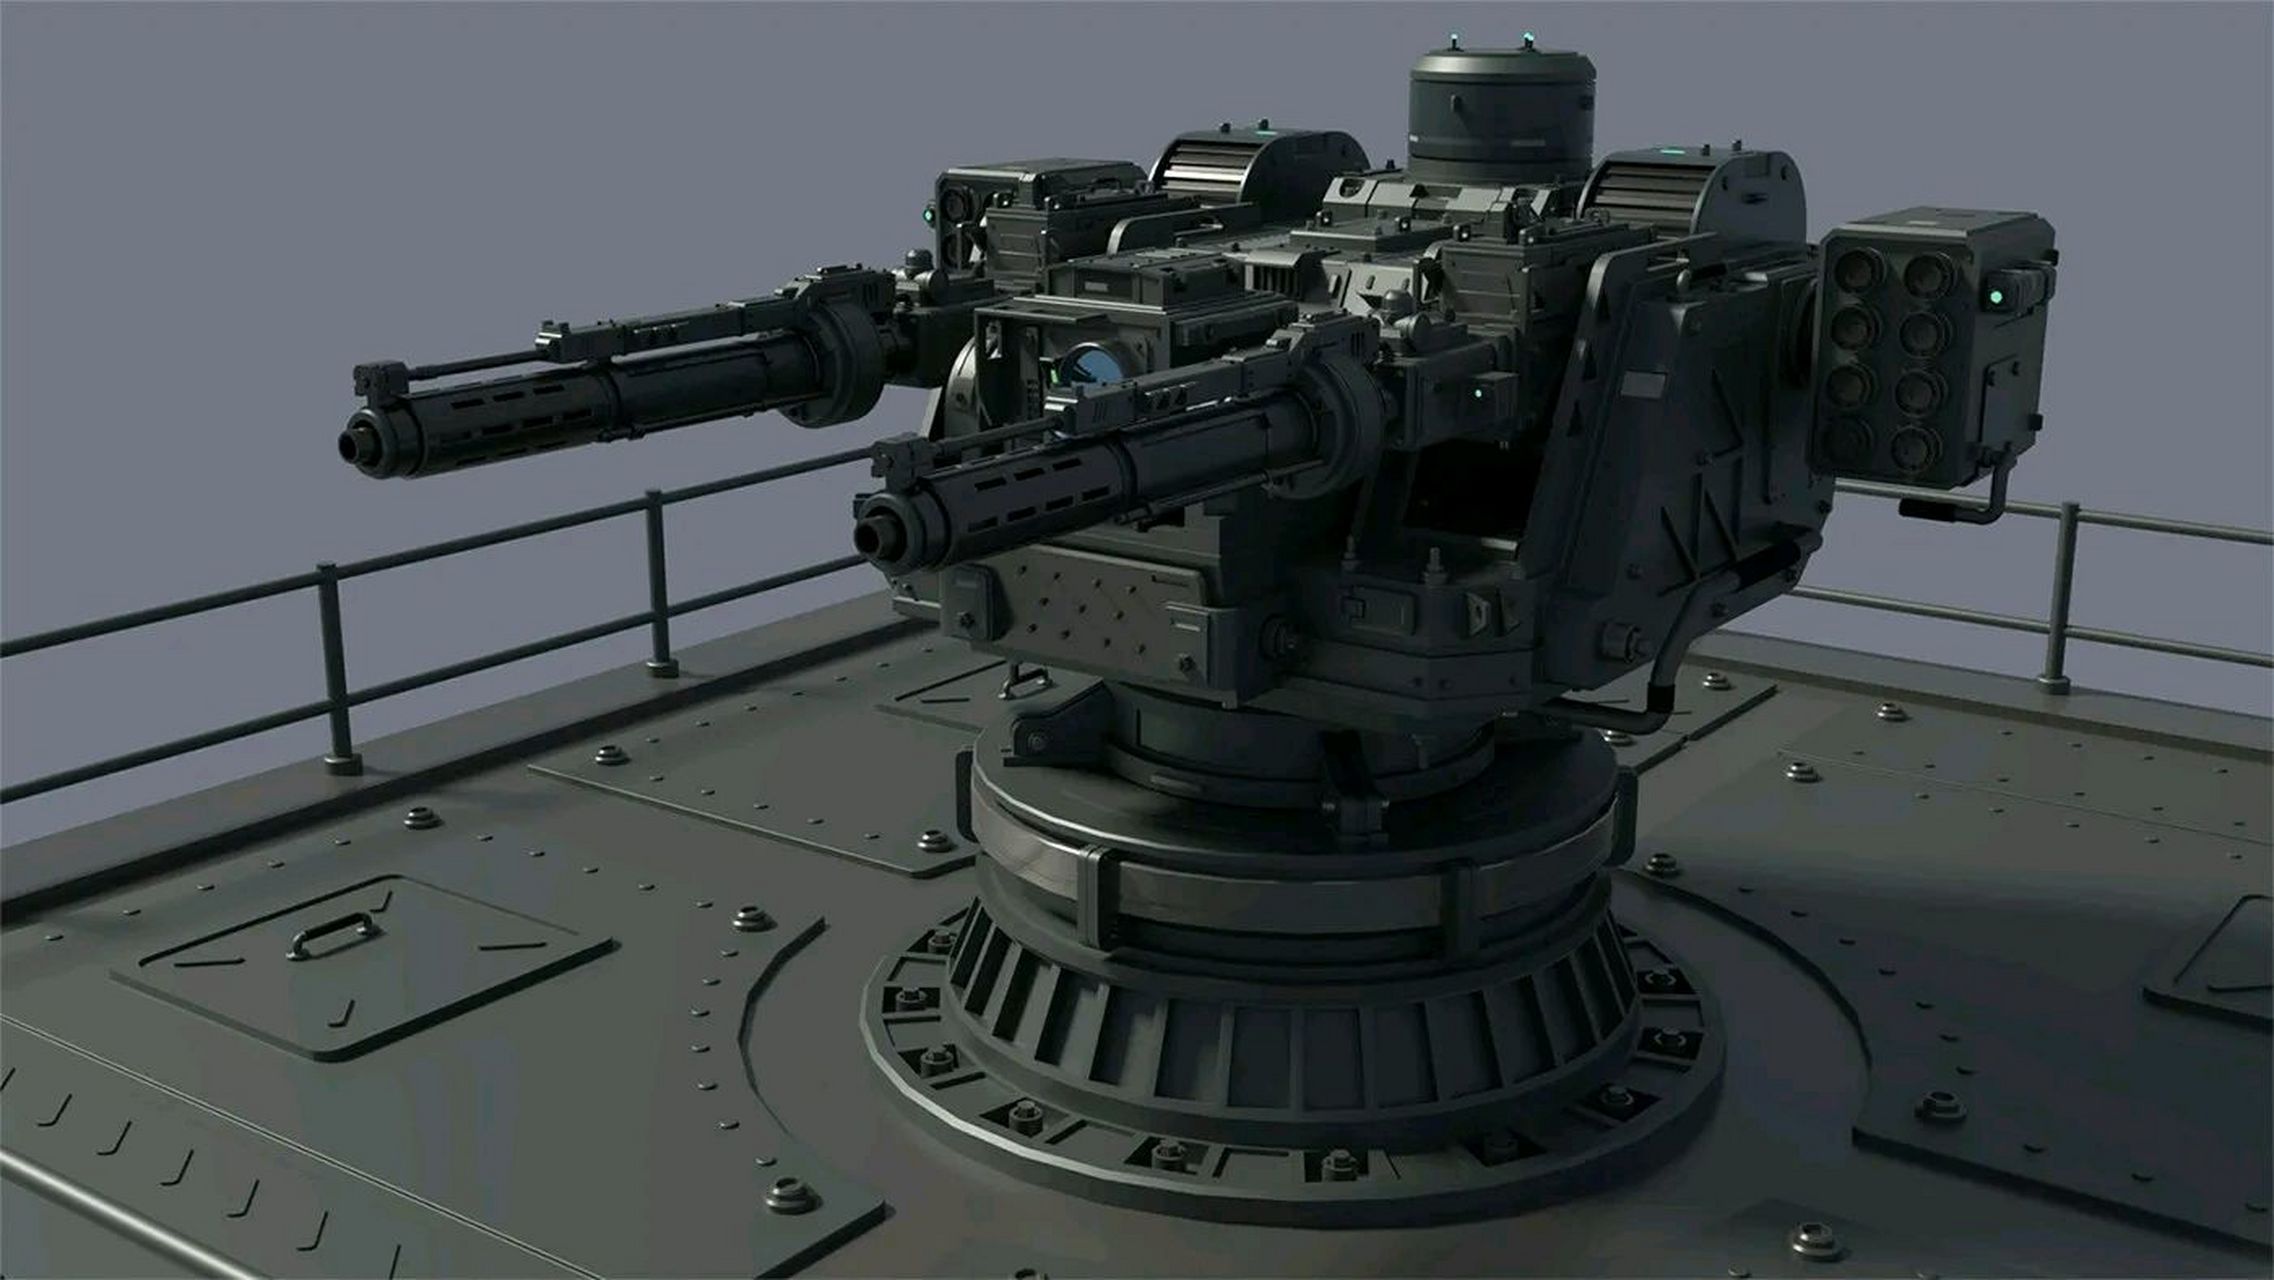 科幻片里面的并联双管防空炮,设定很合理,亲民,没有过于夸张的设计